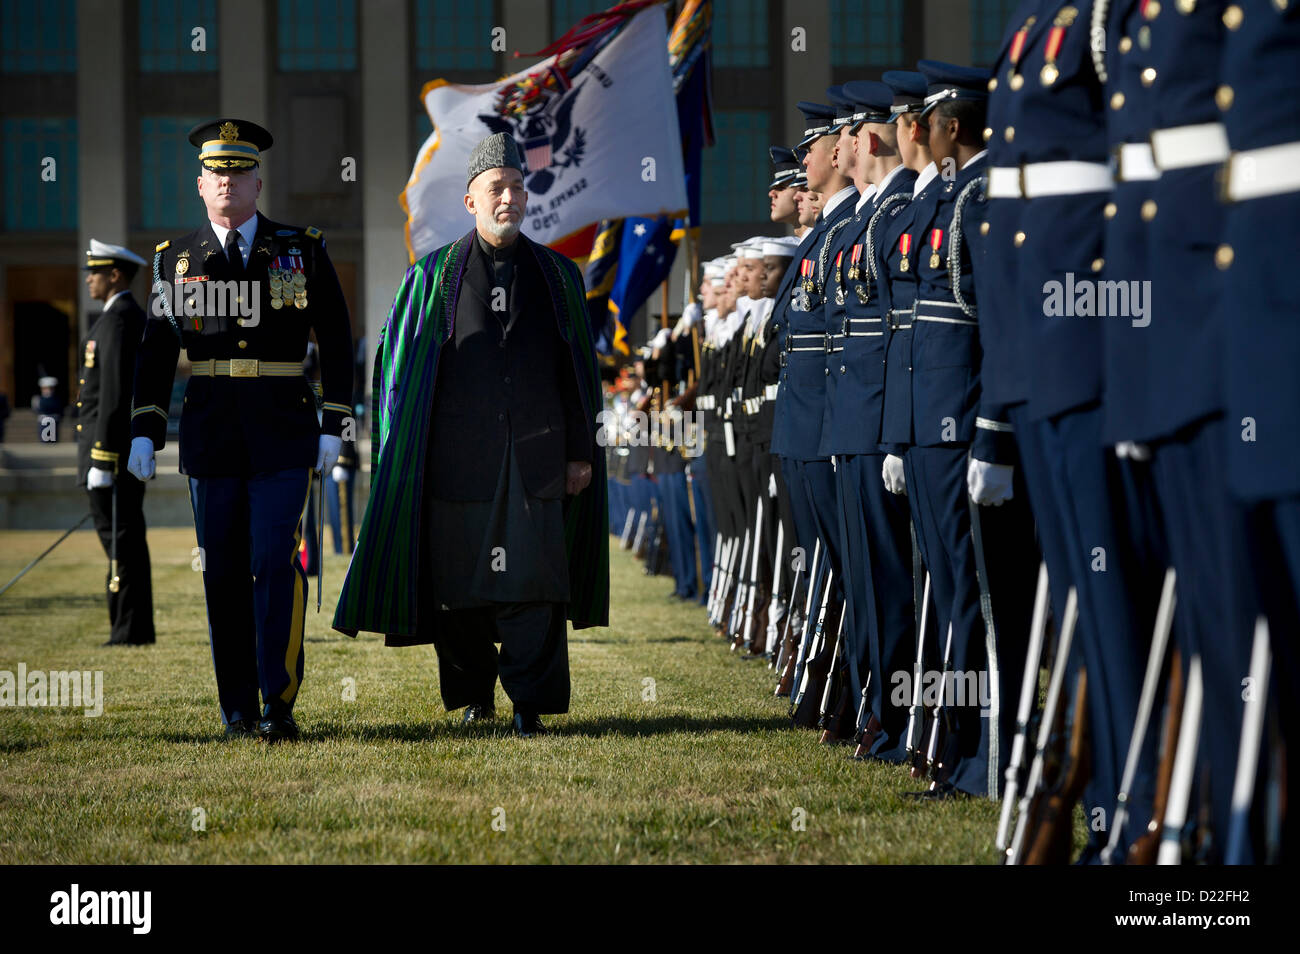 120110-D-TT977-048U.S. Le colonel de l'armée James Markert escorts le président afghan Hamid Karzaï comme il passe les troupes en formation sur le champ de parade de la rivière Pentagone le 10 janvier, 2013. Le secrétaire à la Défense Leon E. Panetta est l'hôte de la cérémonie d'honneur d'accueillir à Karzaï le Pentagone. Panetta, Karzaï et leurs principaux conseillers se réuniront pour discuter de sujets d'intérêt de la sécurité nationale pour les deux nations. DoD photo de Maître de 1re classe Chad J. McNeeley, Marine américaine. (Publié) Banque D'Images